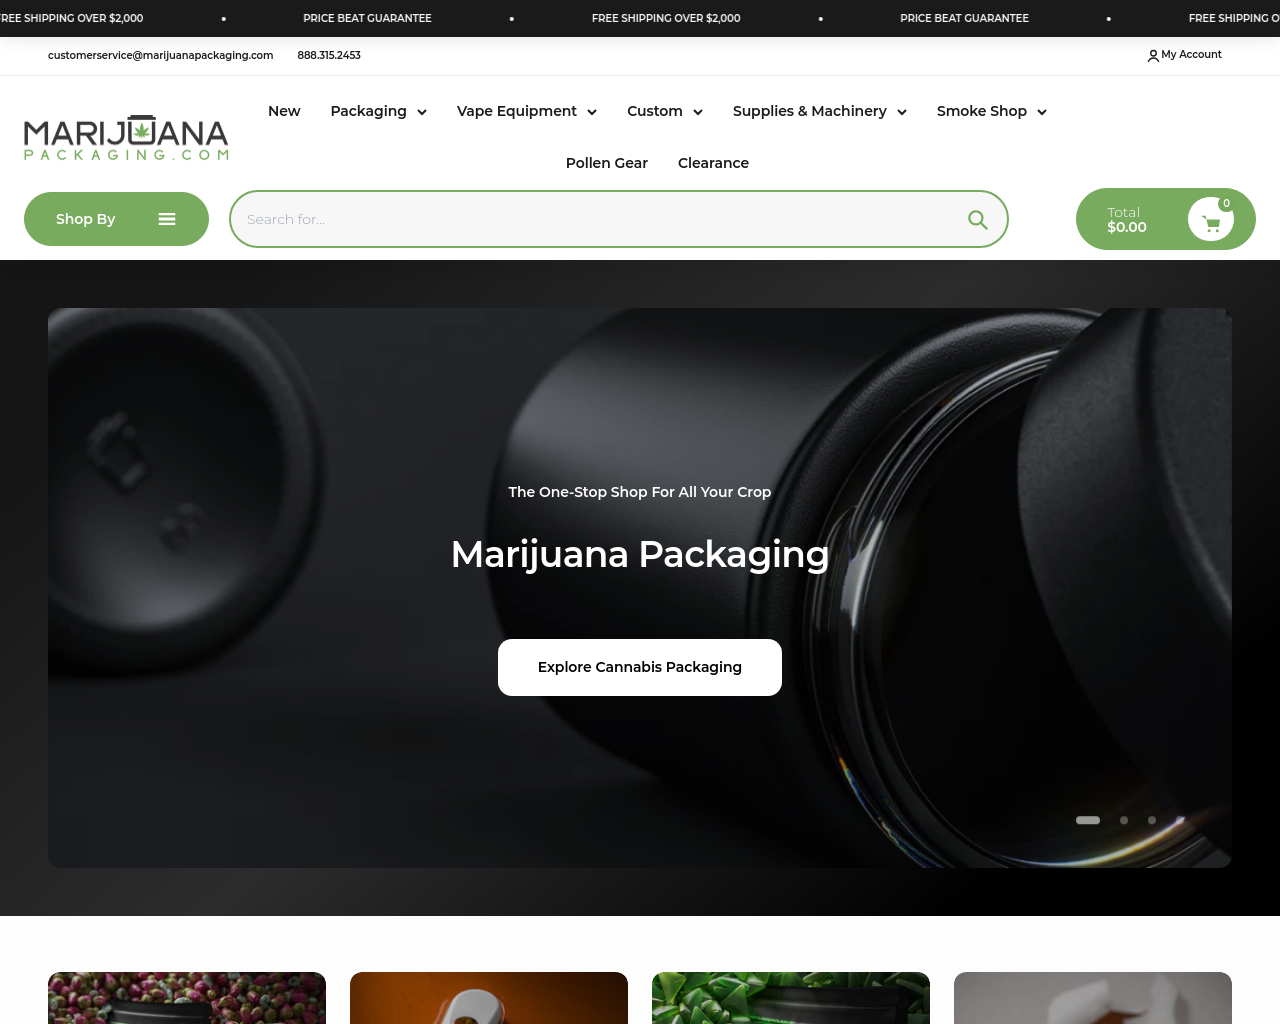 marijuanapackaging.com